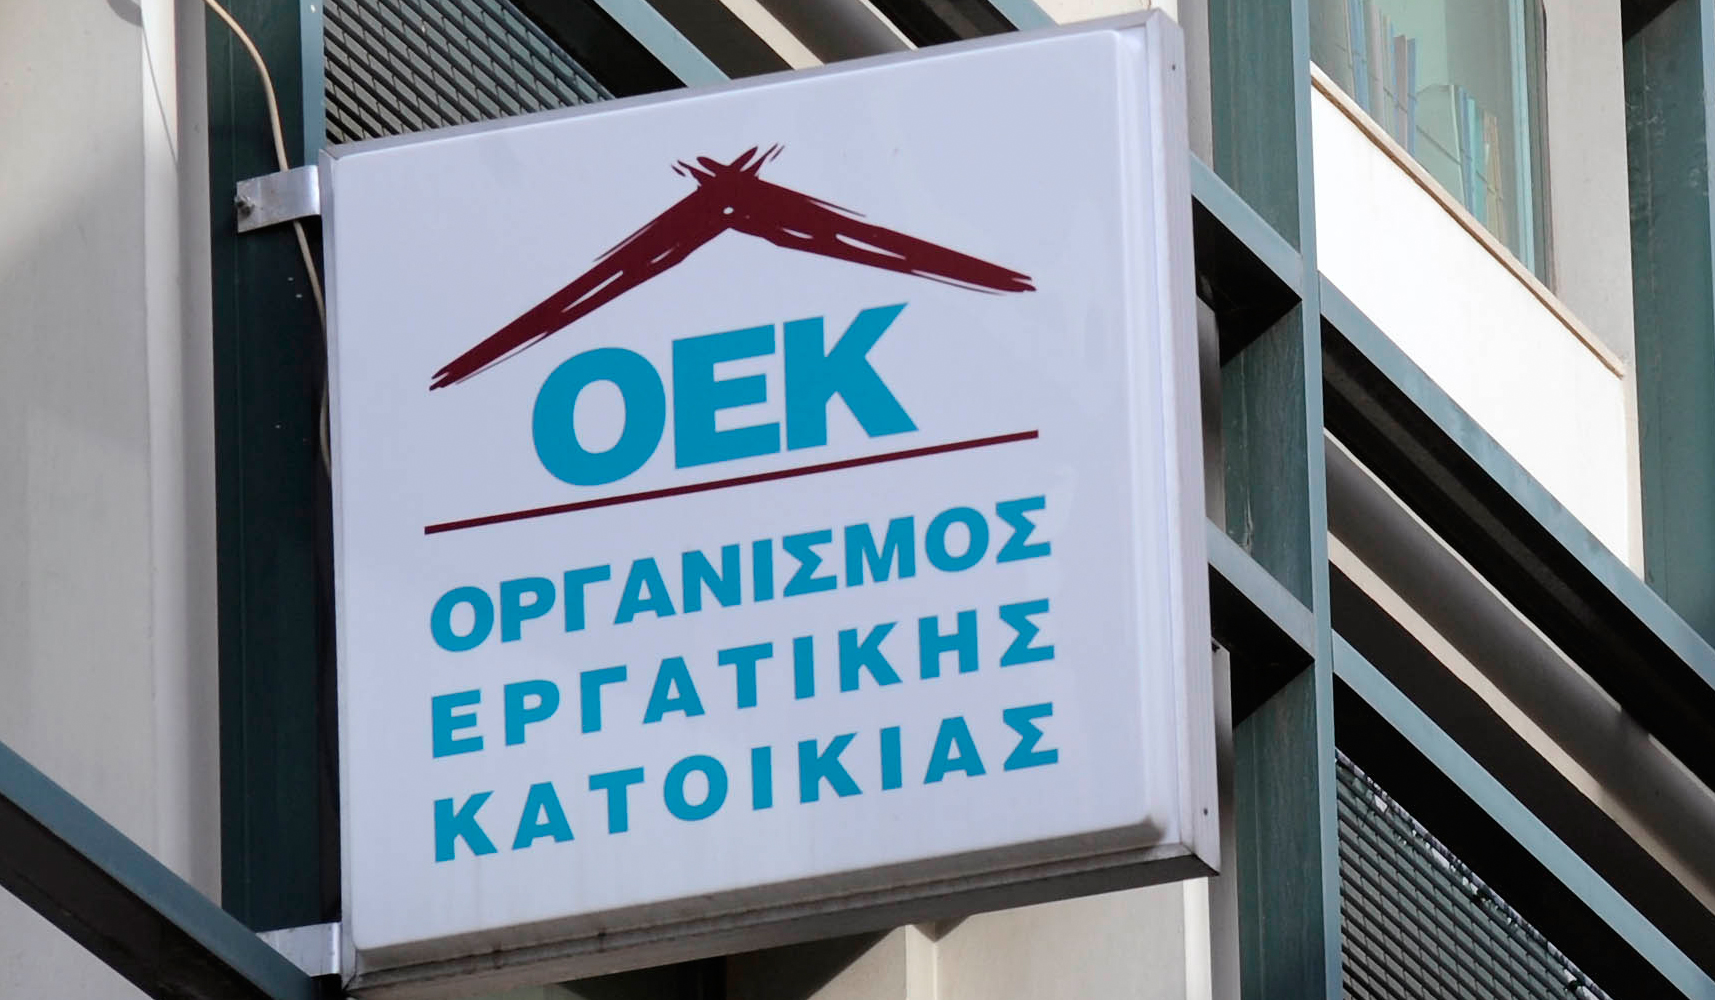 Ασύλληπτο! Οι Έλληνες δίνουν εισφορές για τον Οργανισμό Εργατικής Κατοικίας, ενώ δεν υπάρχει!